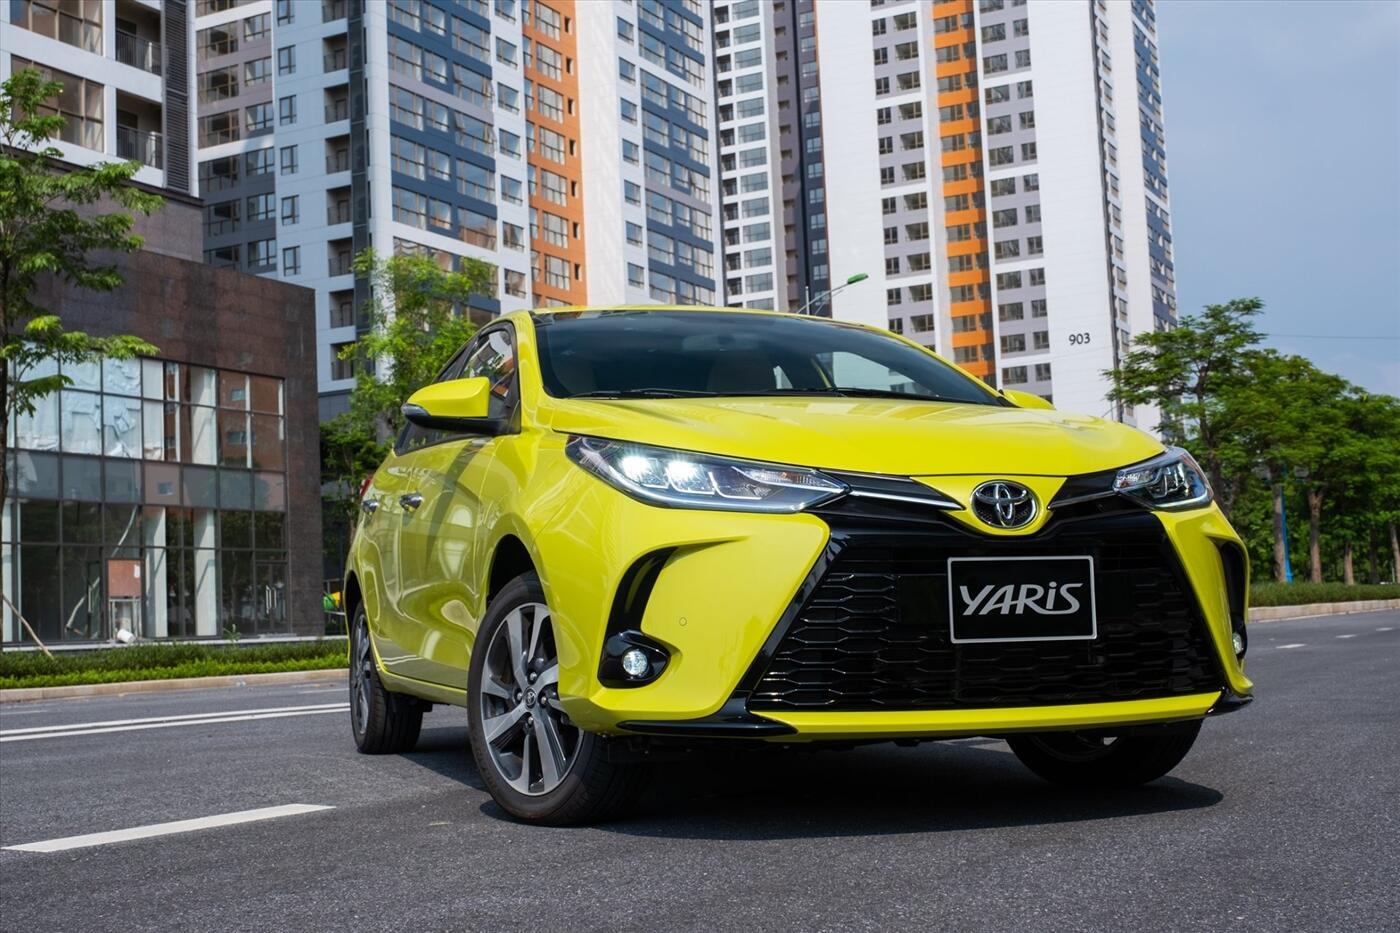 Giá bán xe Toyota Yaris 20182019 mới tại Việt Nam từ 650 triệu đồng